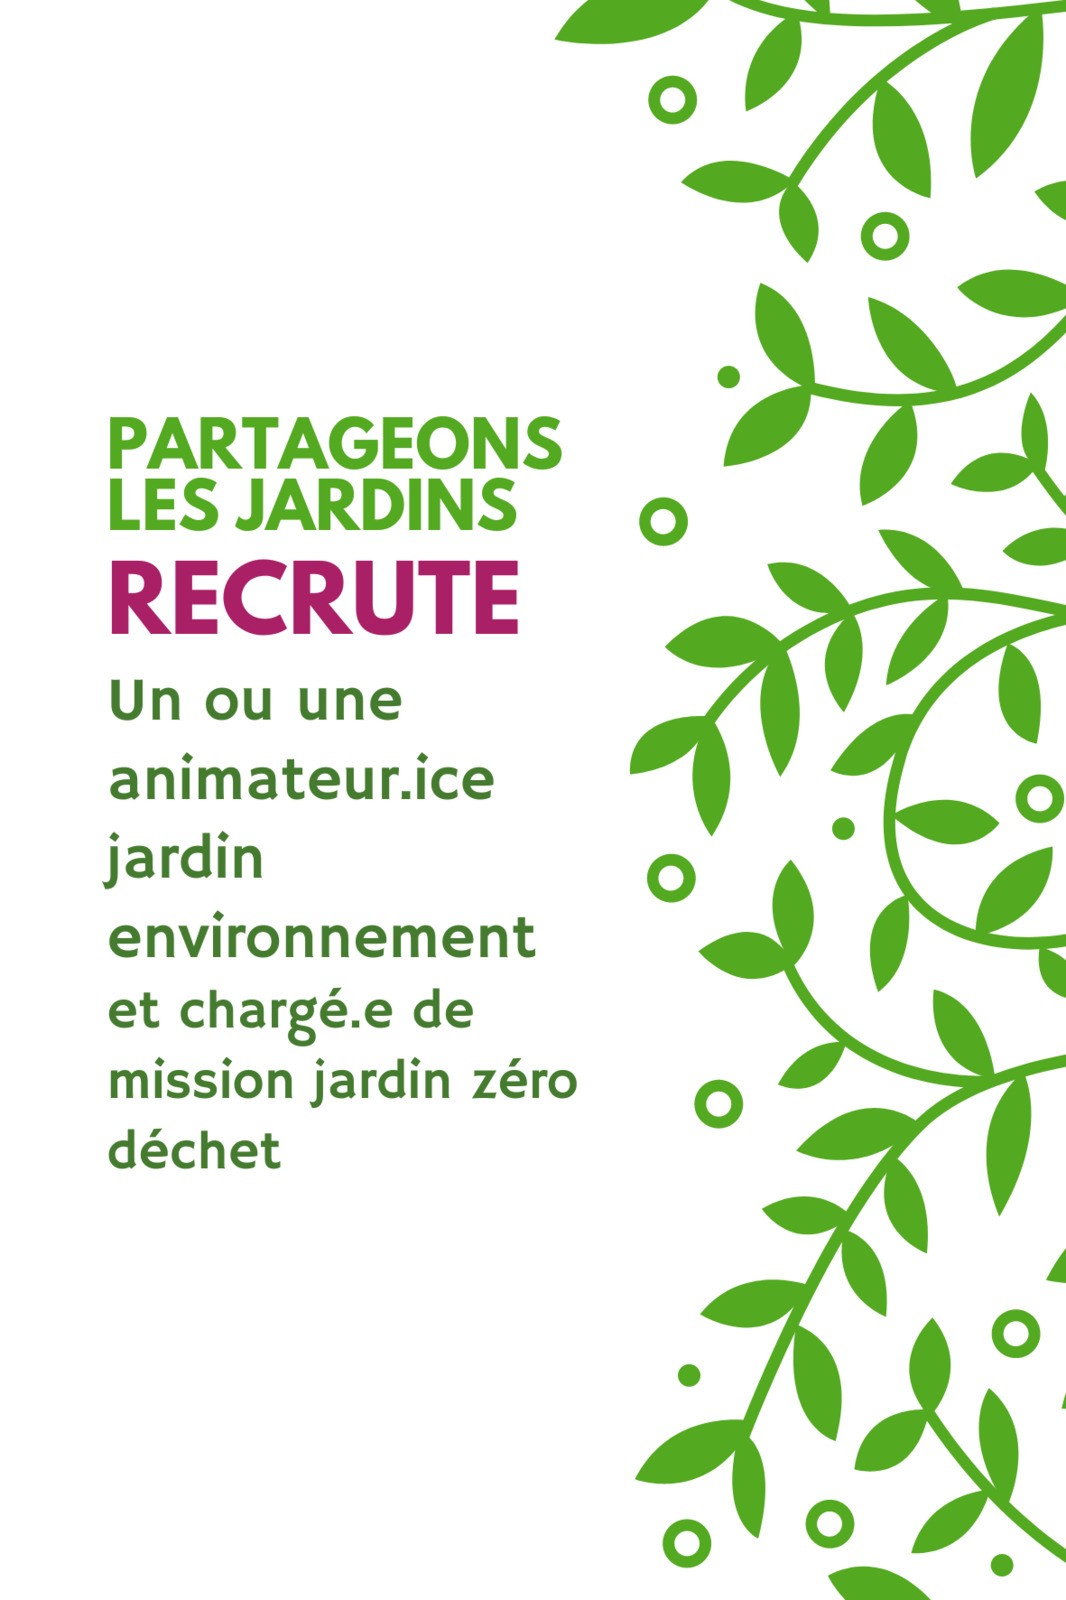 Partageons les Jardins recrute ! Animateur.ice jardin, environnement et Chargé.e de mission jardin zéro déchet - Toulouse